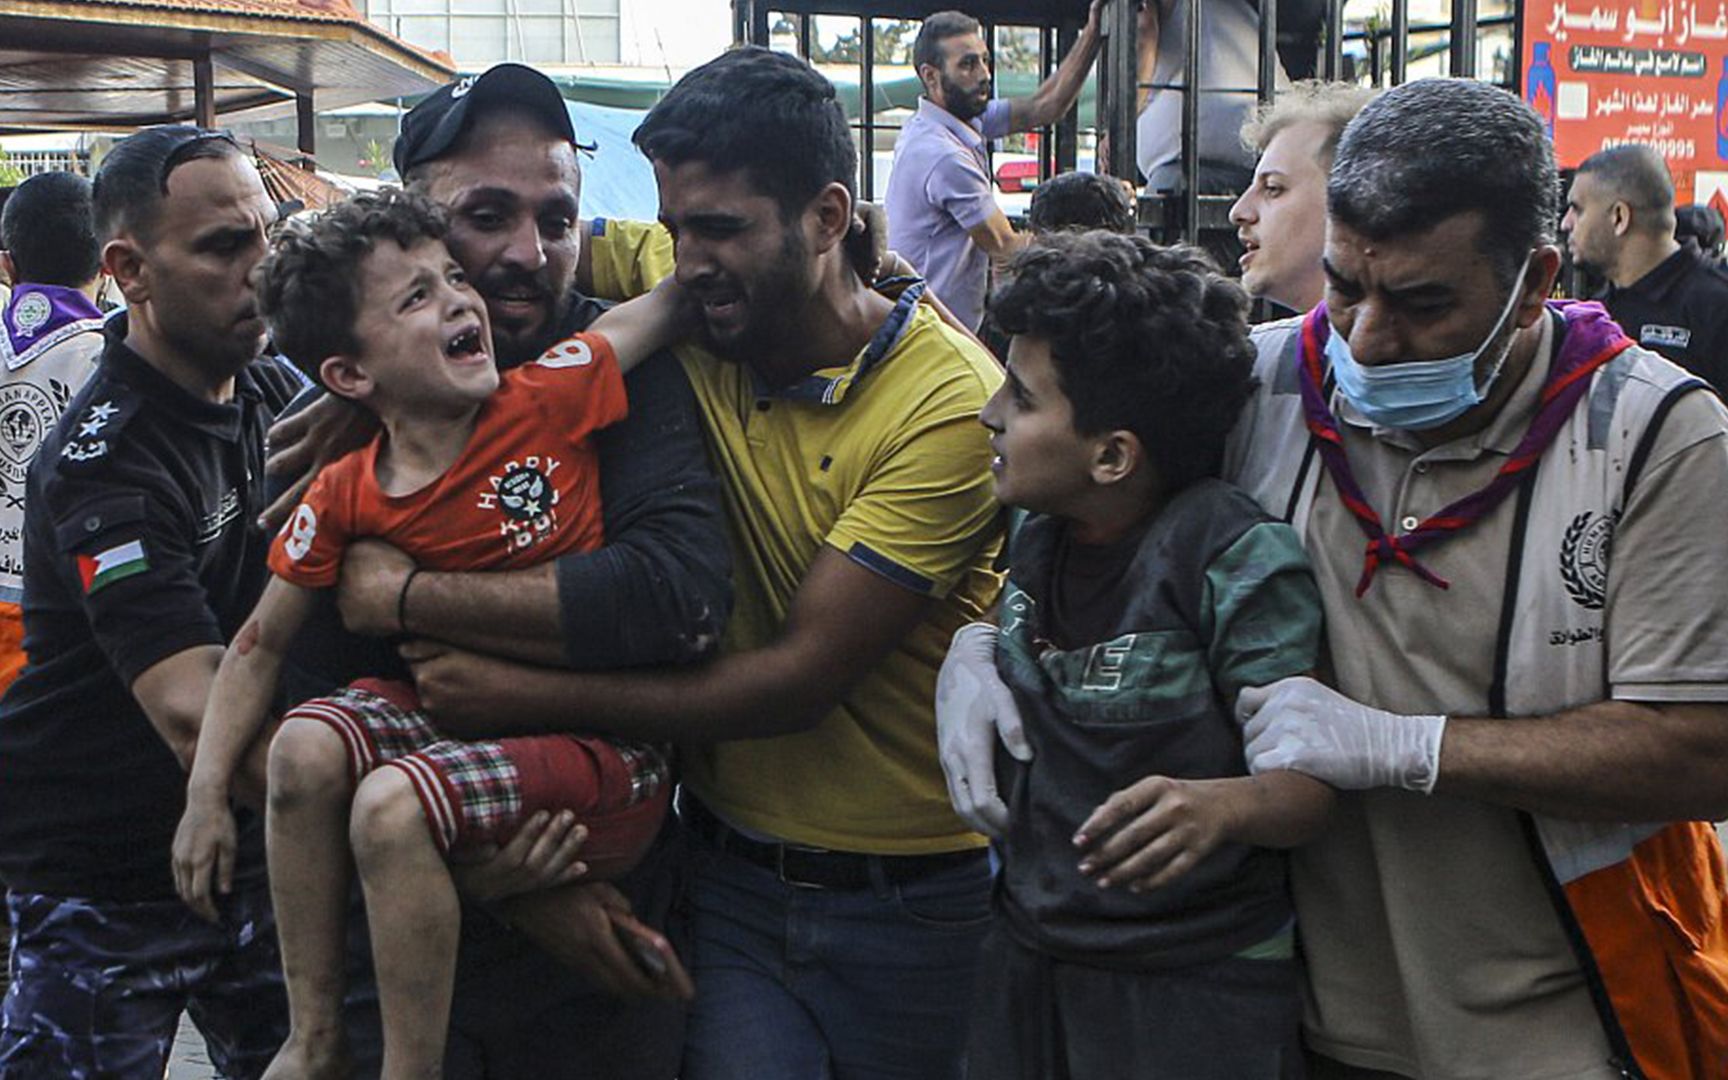 加沙1300多名儿童死亡 一学校遭轰炸